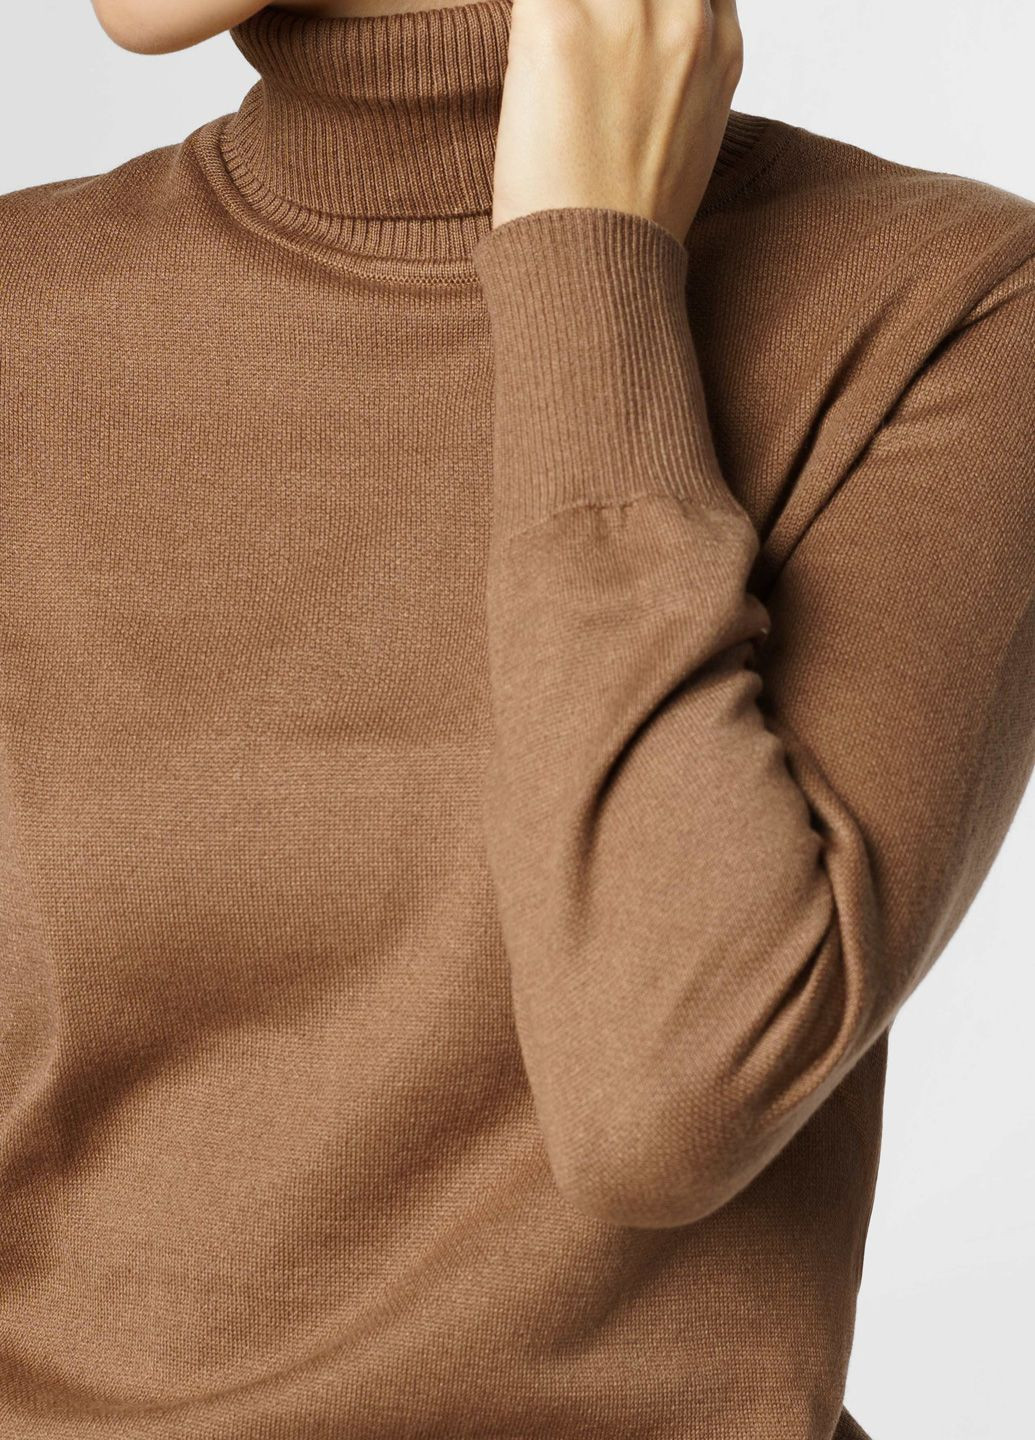 Коричневый зимний свитер женский коричневый Arber Roll-neck WW4 WTR-151